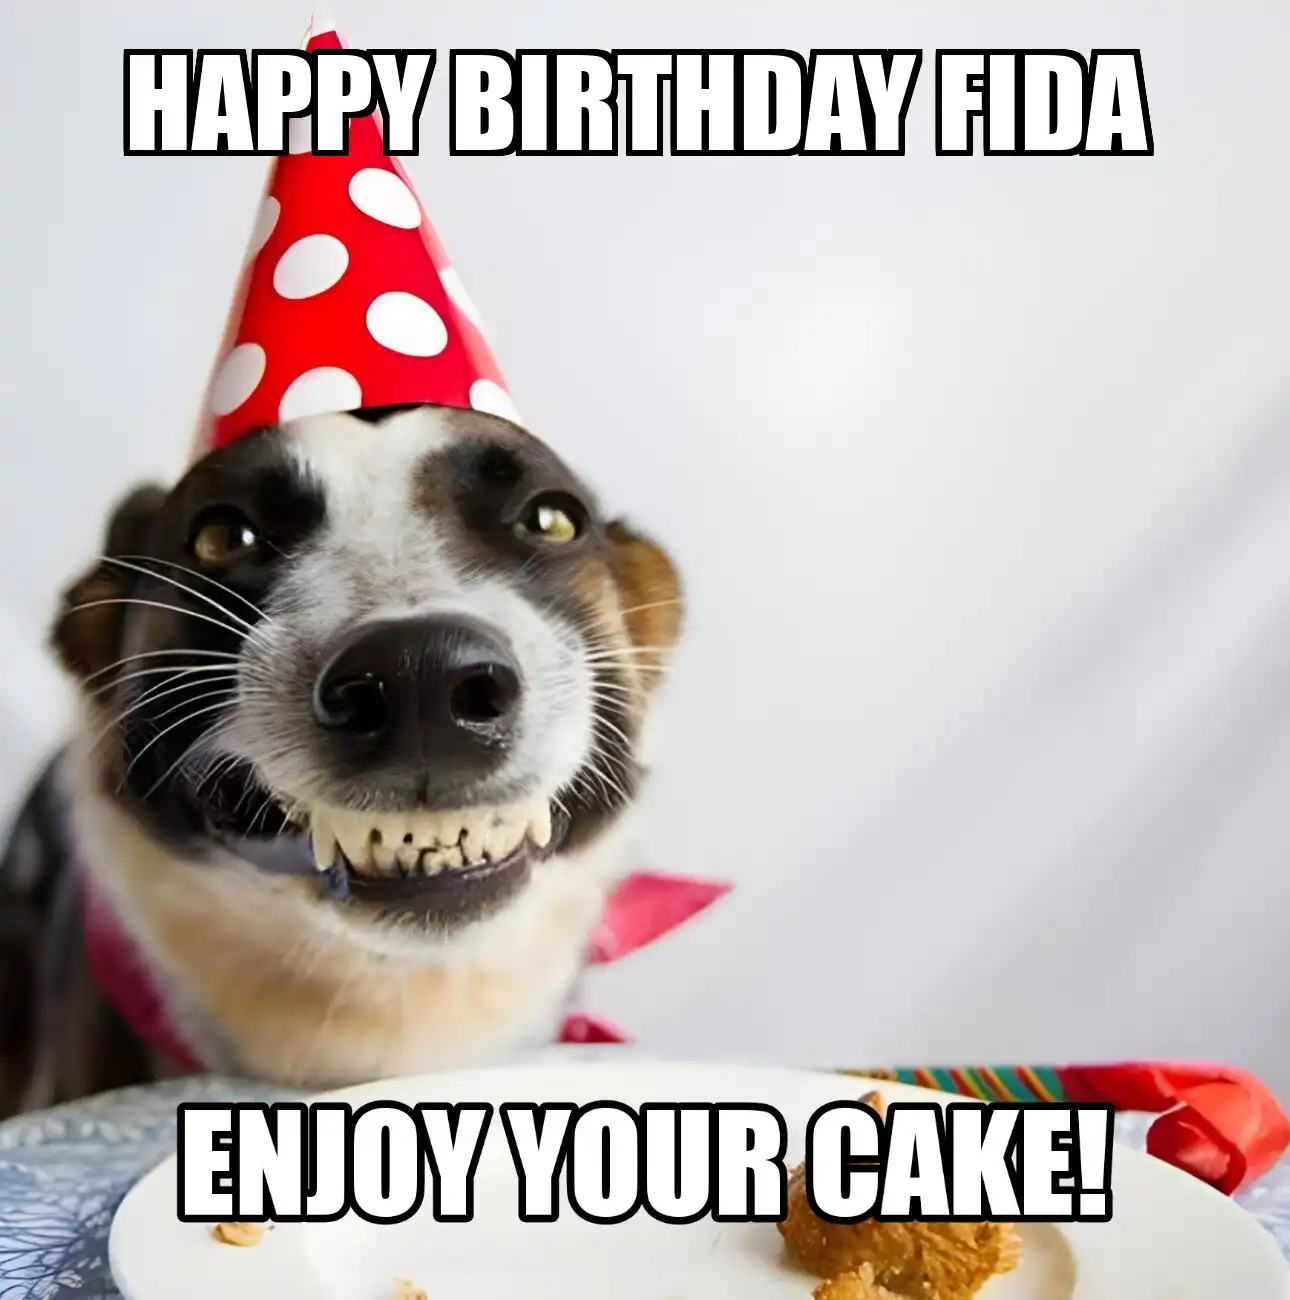 Happy Birthday Fida Enjoy Your Cake Dog Meme